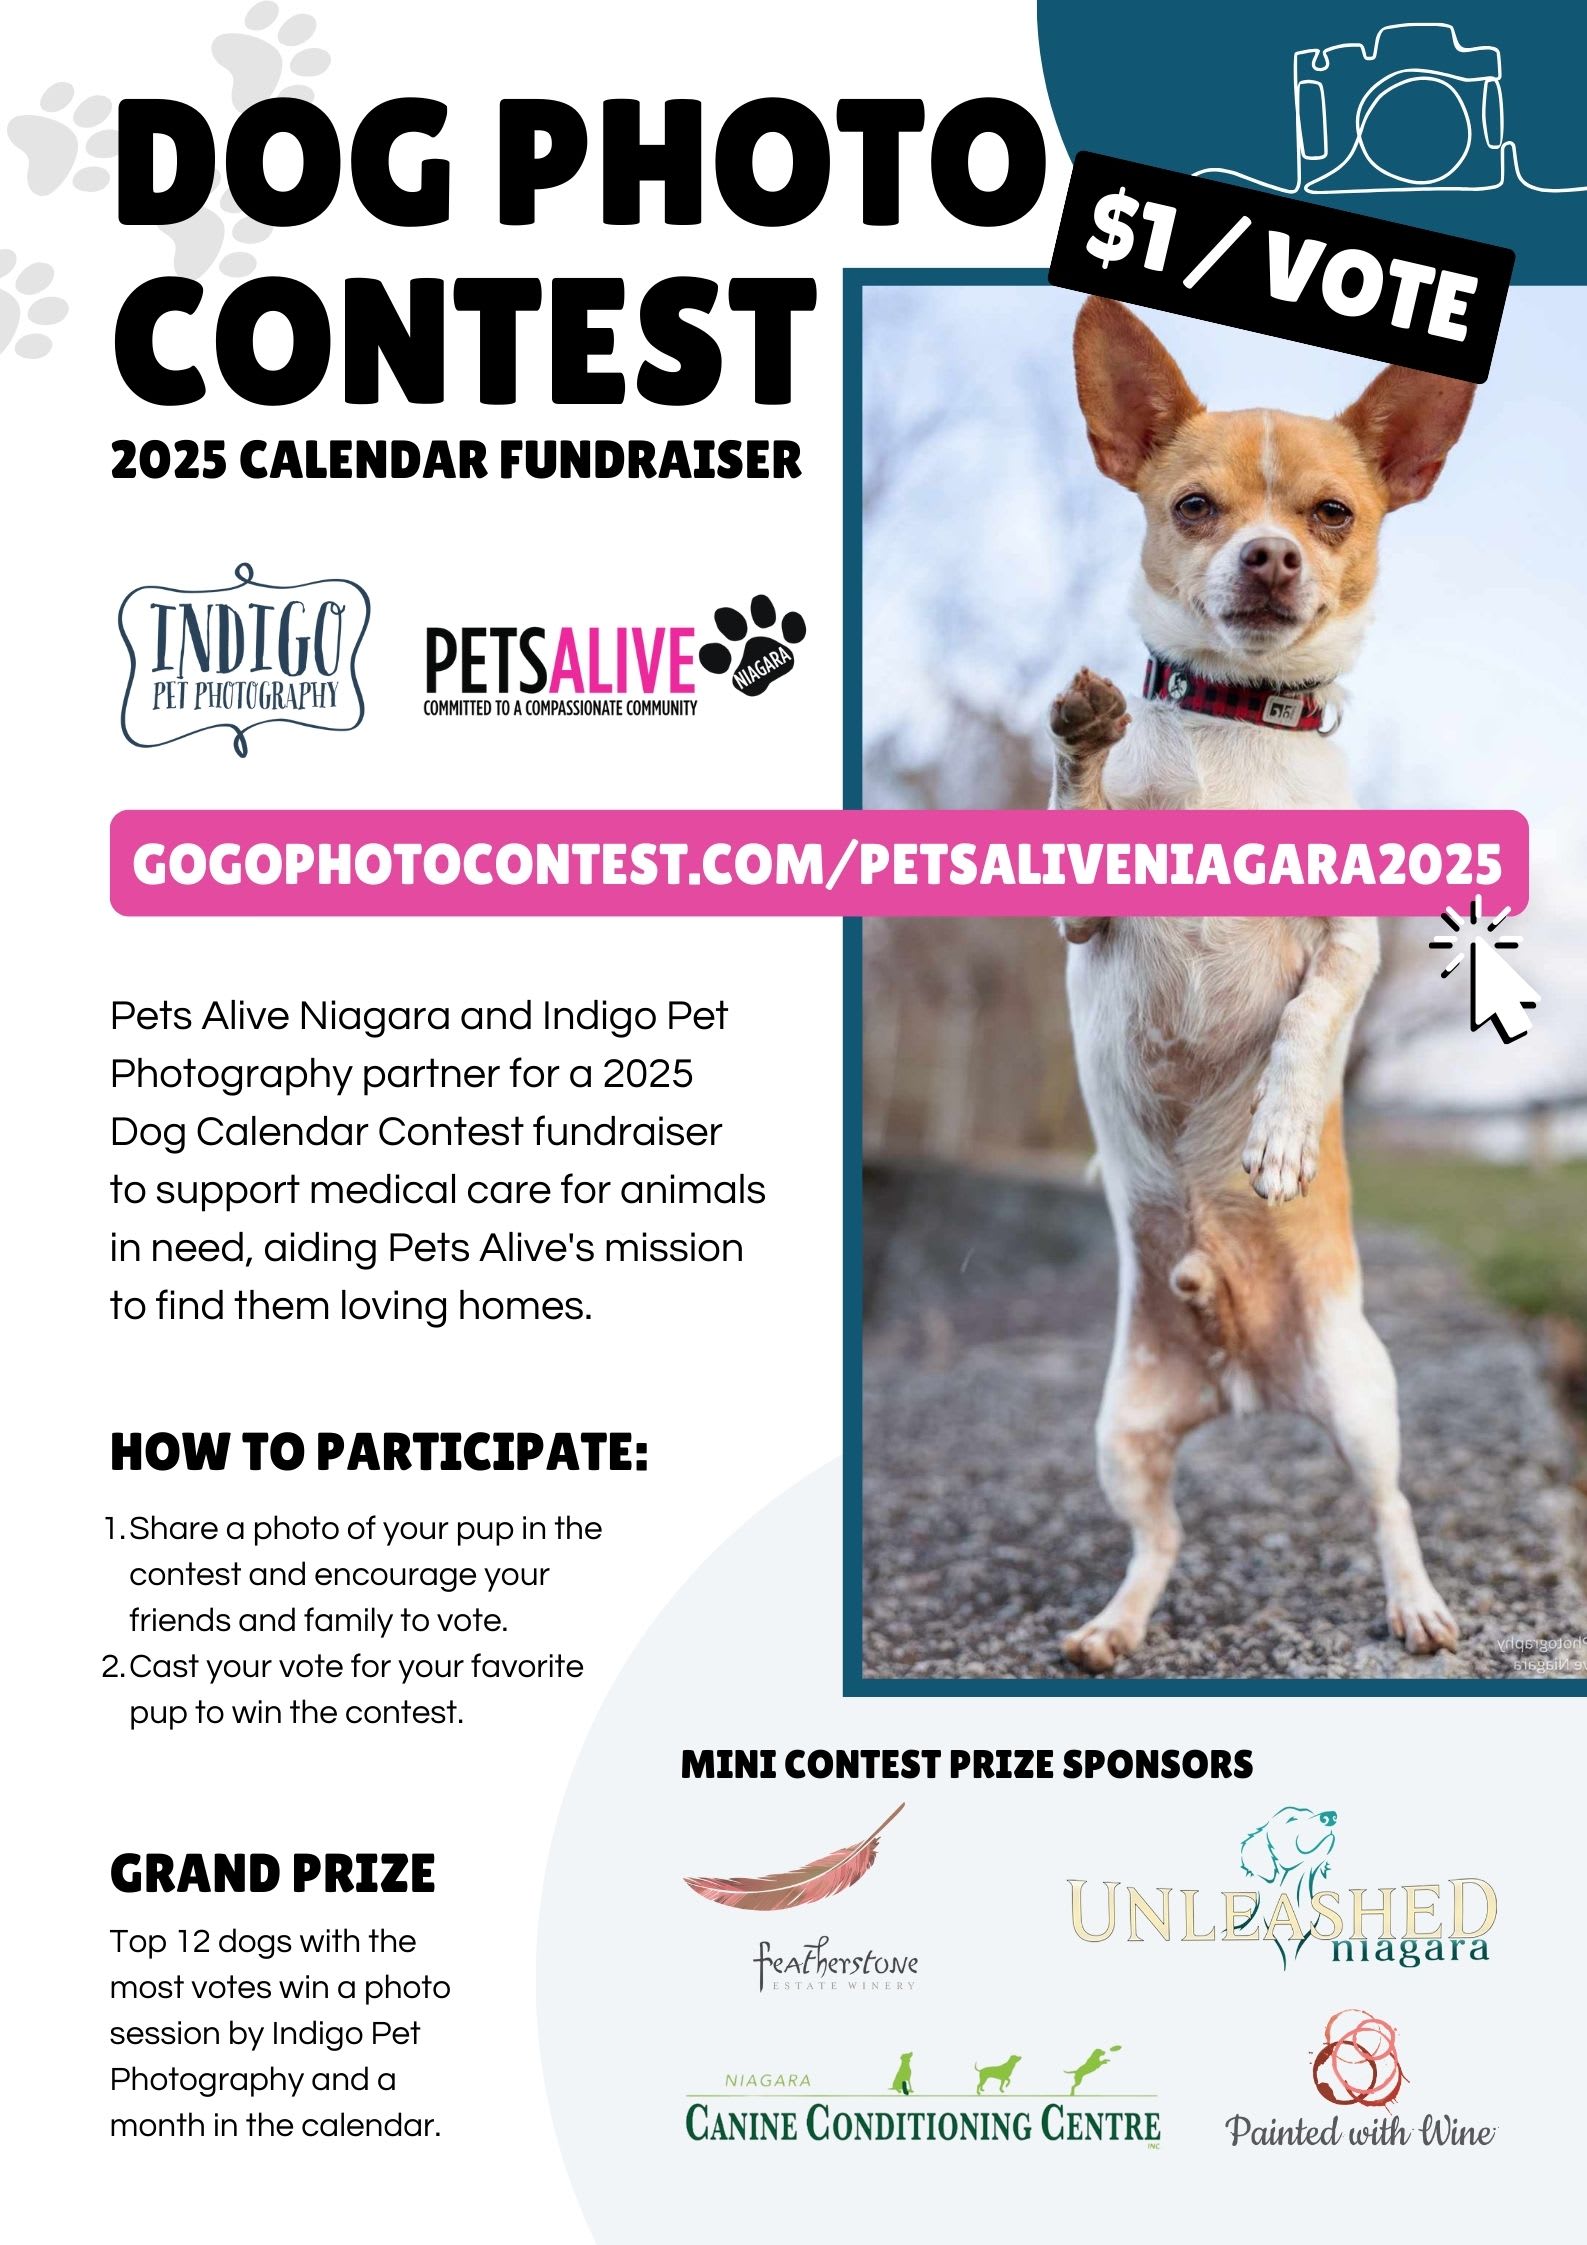 Dog Photo Contest Calendar 2025